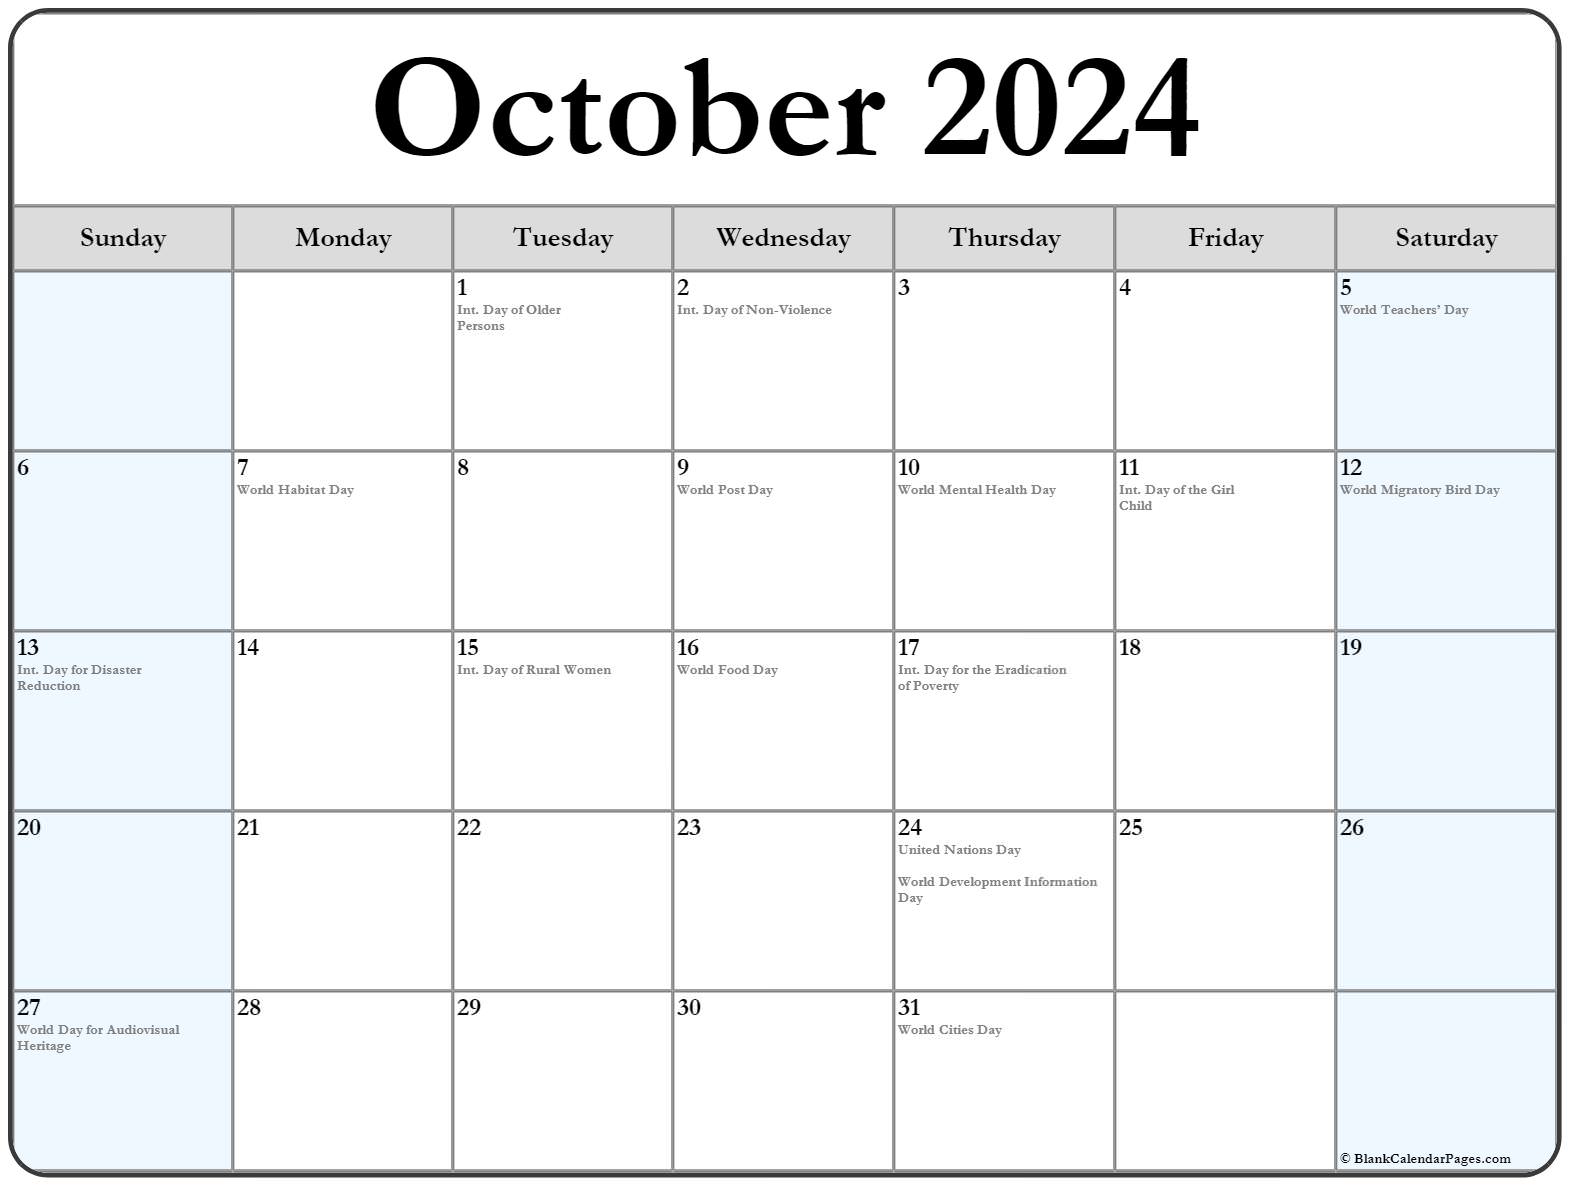 Special Days Calendar October 2024 Druci Giorgia